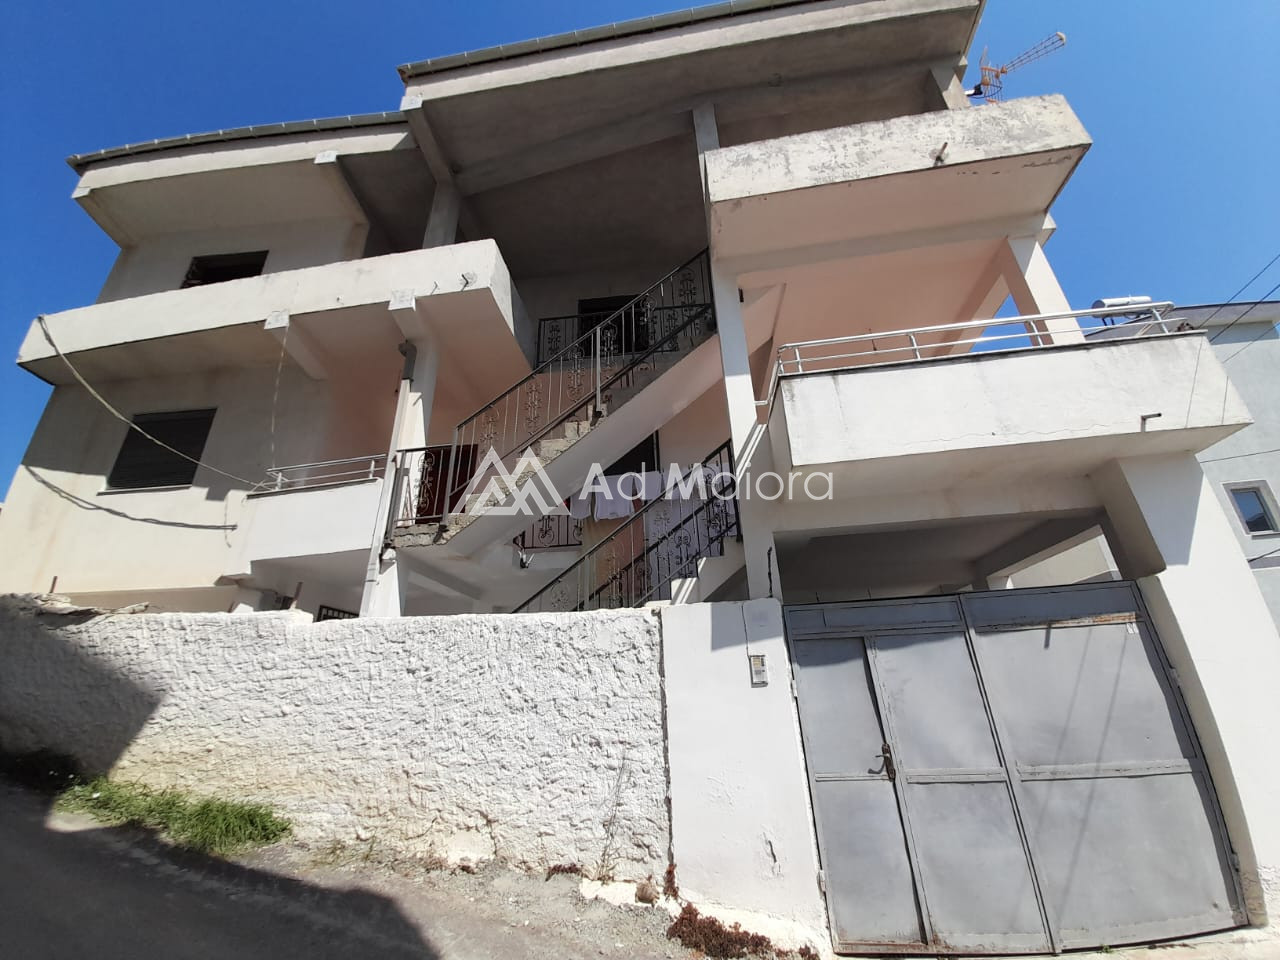 Foto e Shtëpi në shitje spitali durres, spitali, Durrës